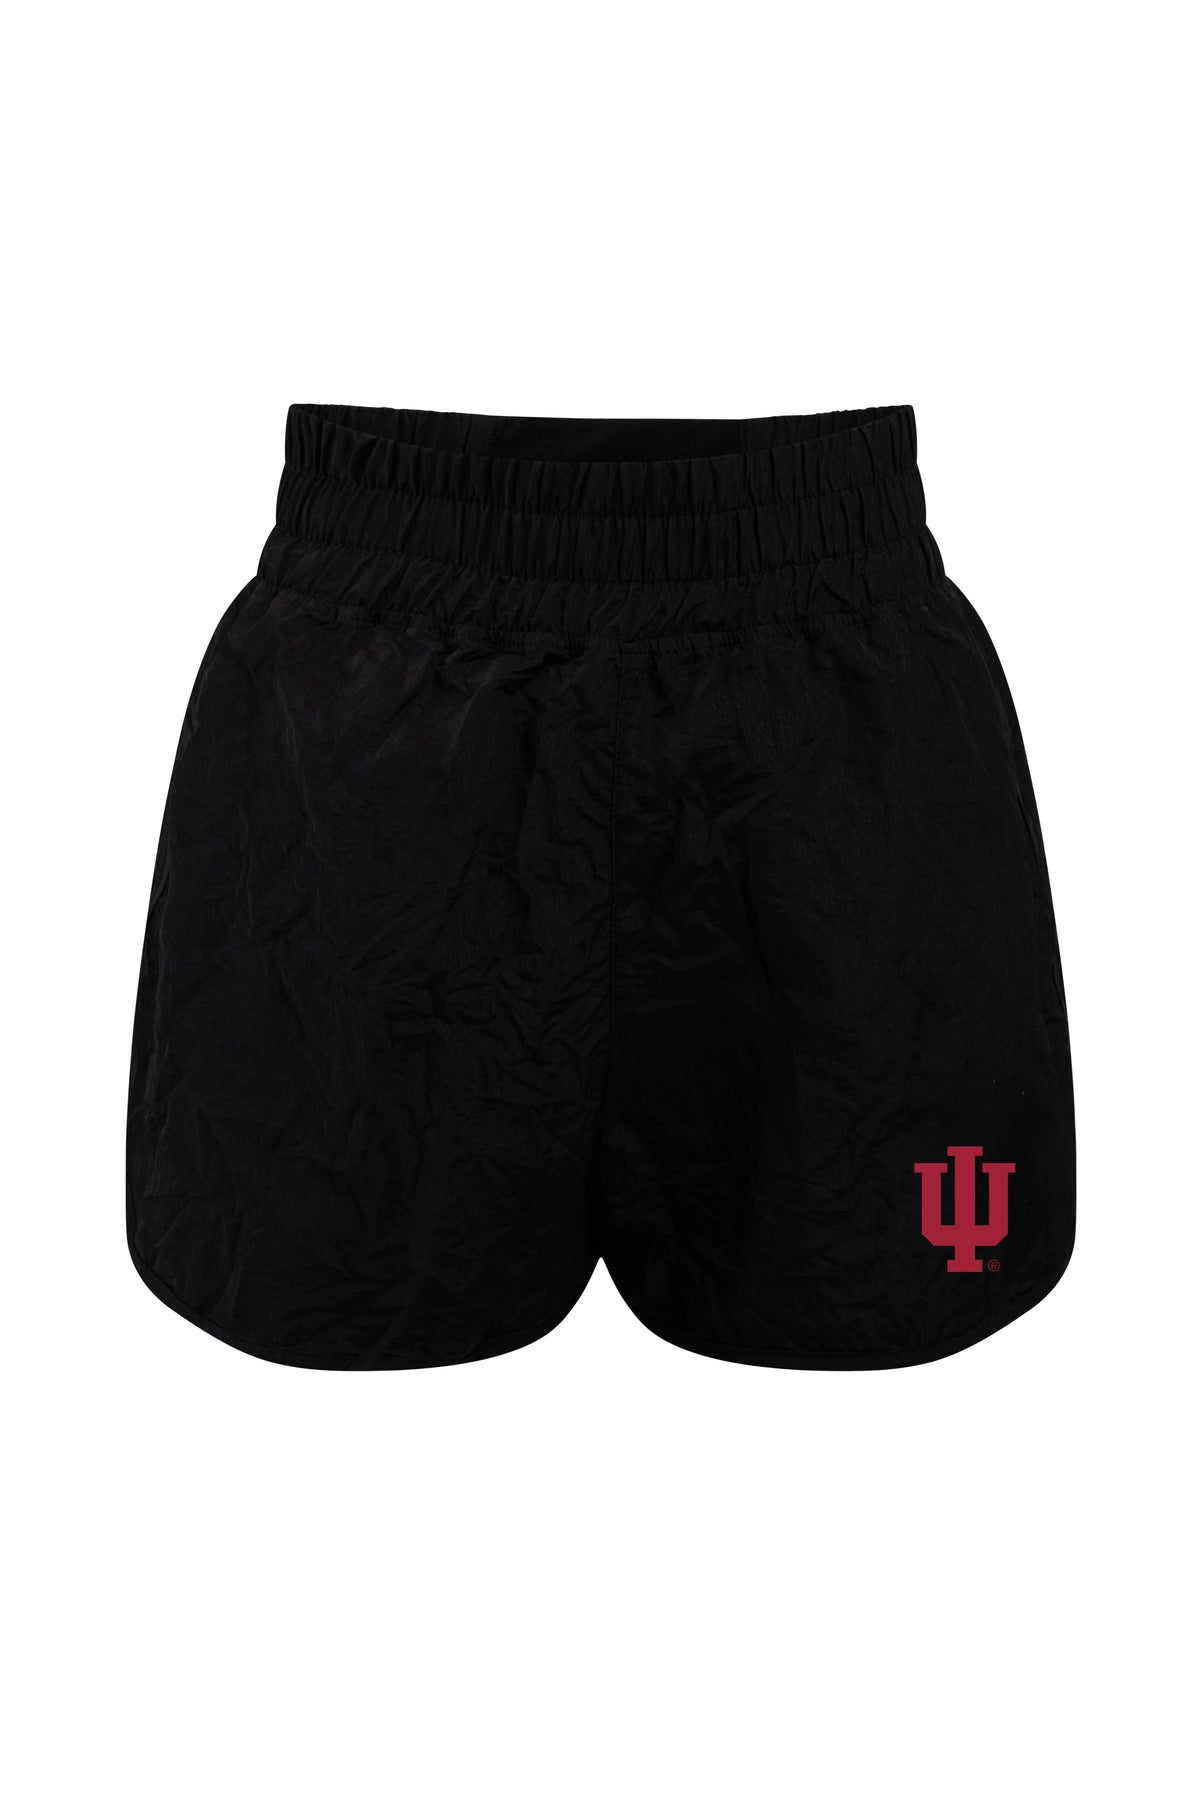 Indiana University Boxer Short